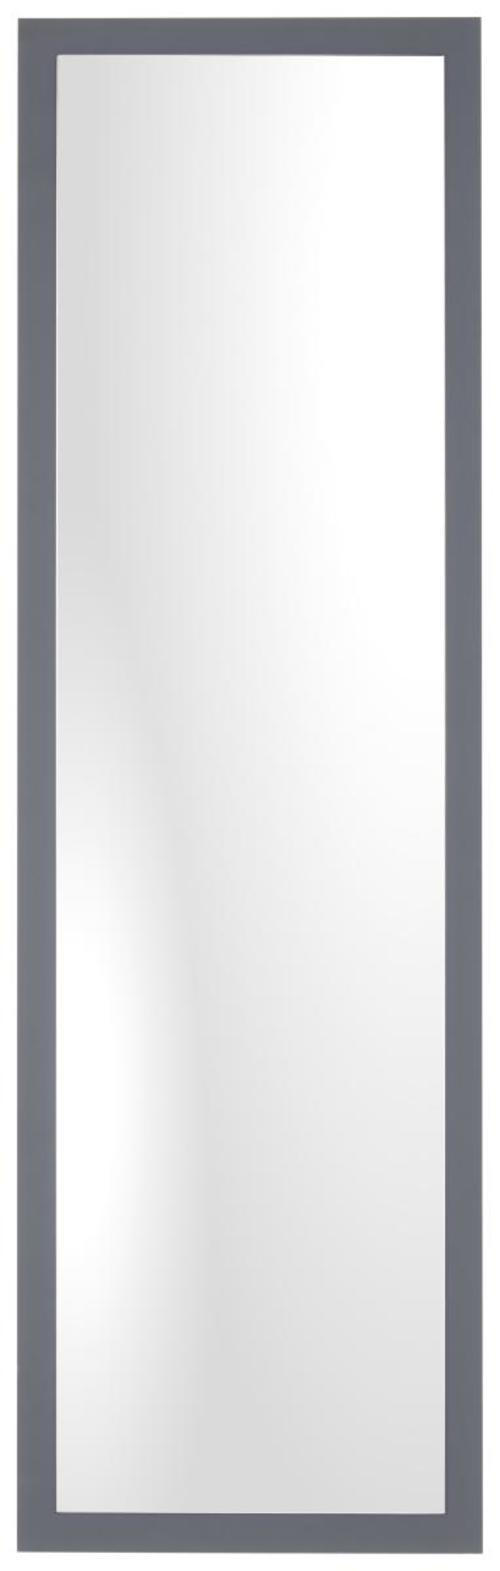 WANDSPIEGEL 45/177/2,5 cm  - Anthrazit, Design, Glas (45/177/2,5cm) - Xora